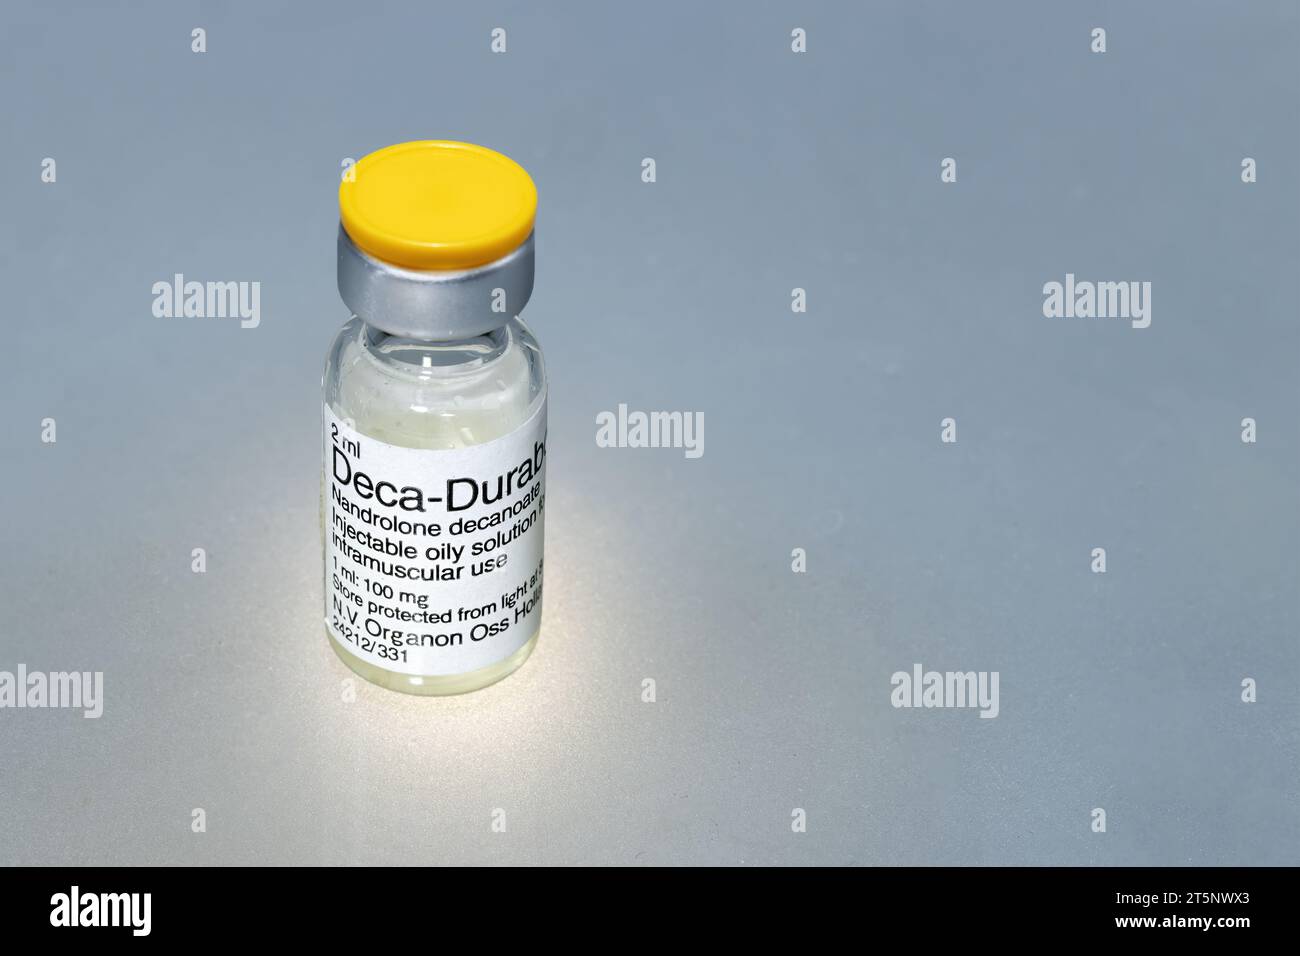 Spanien, Madrid, 01-13-2022, Eine Durchstechflasche mit flüssiger Substanz zu injizieren, ein anaboles Steroid namens Nandrolon Decanoate auf grauem Hintergrund Stockfoto